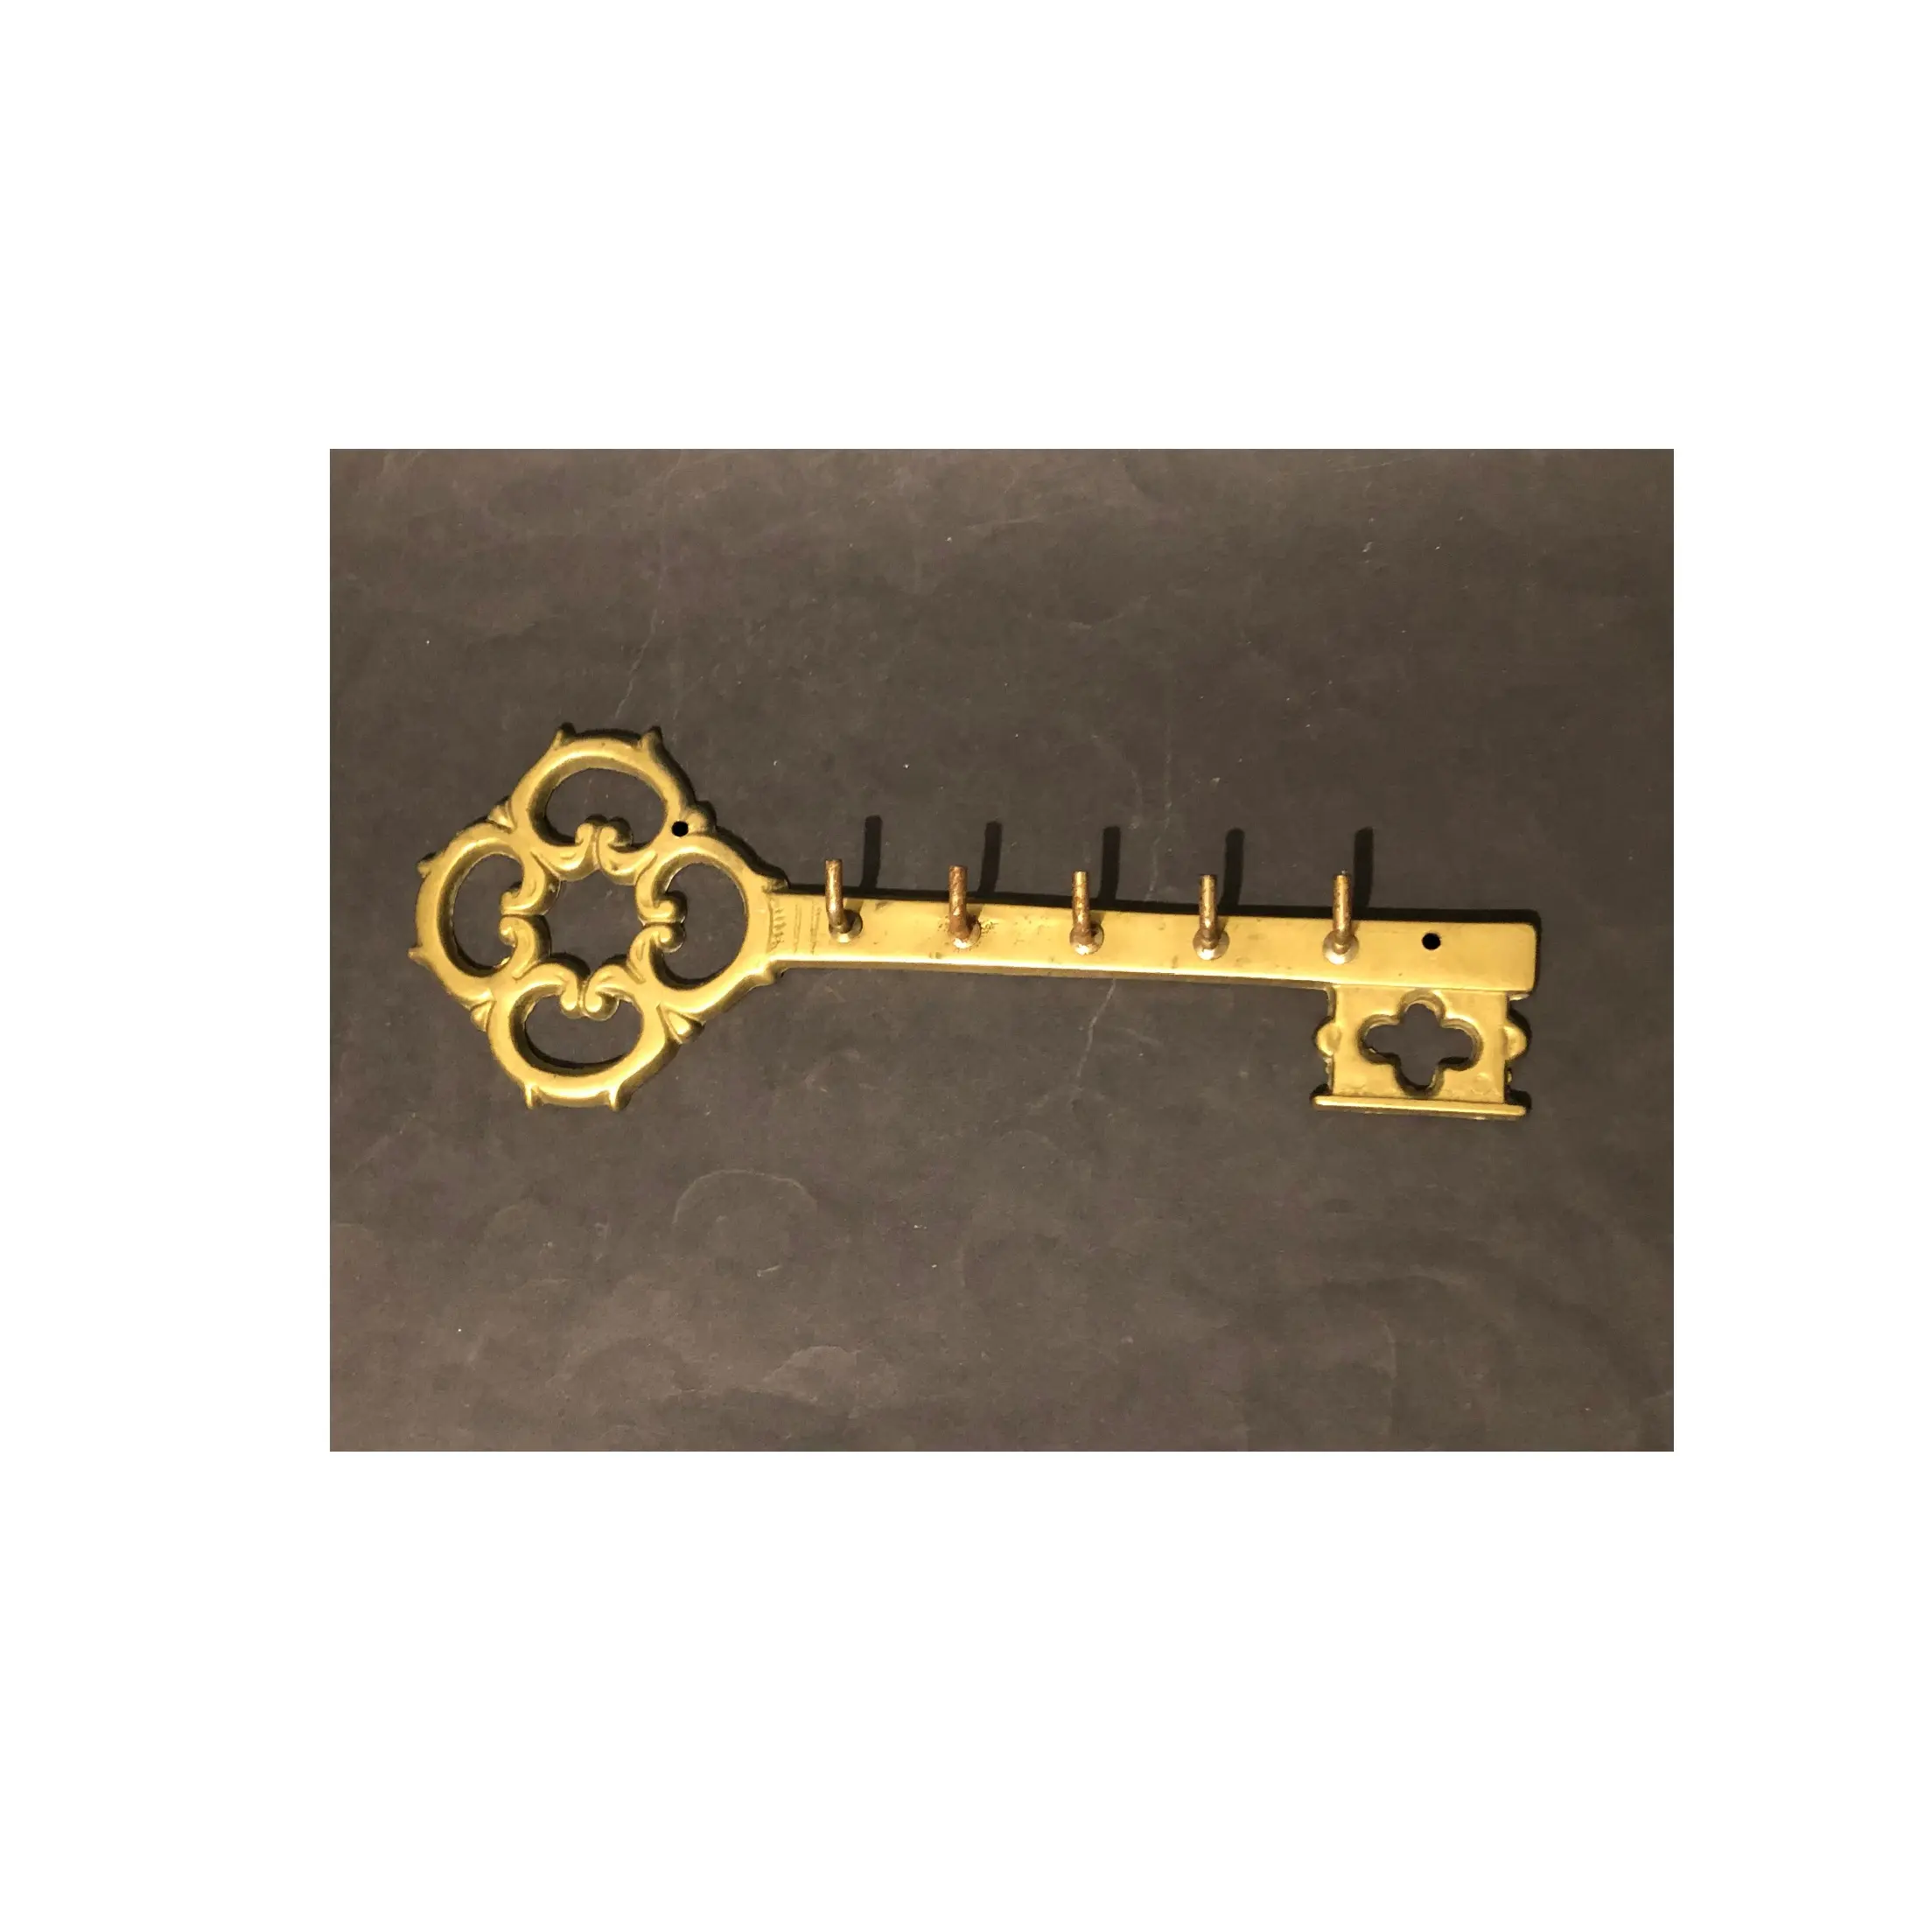 Yüksek kaliteli metal duvar anahtar kanca ev ve otel için düşük fiyat özel boyut metal duvar anahtar tutucu askı ile altın kaplama